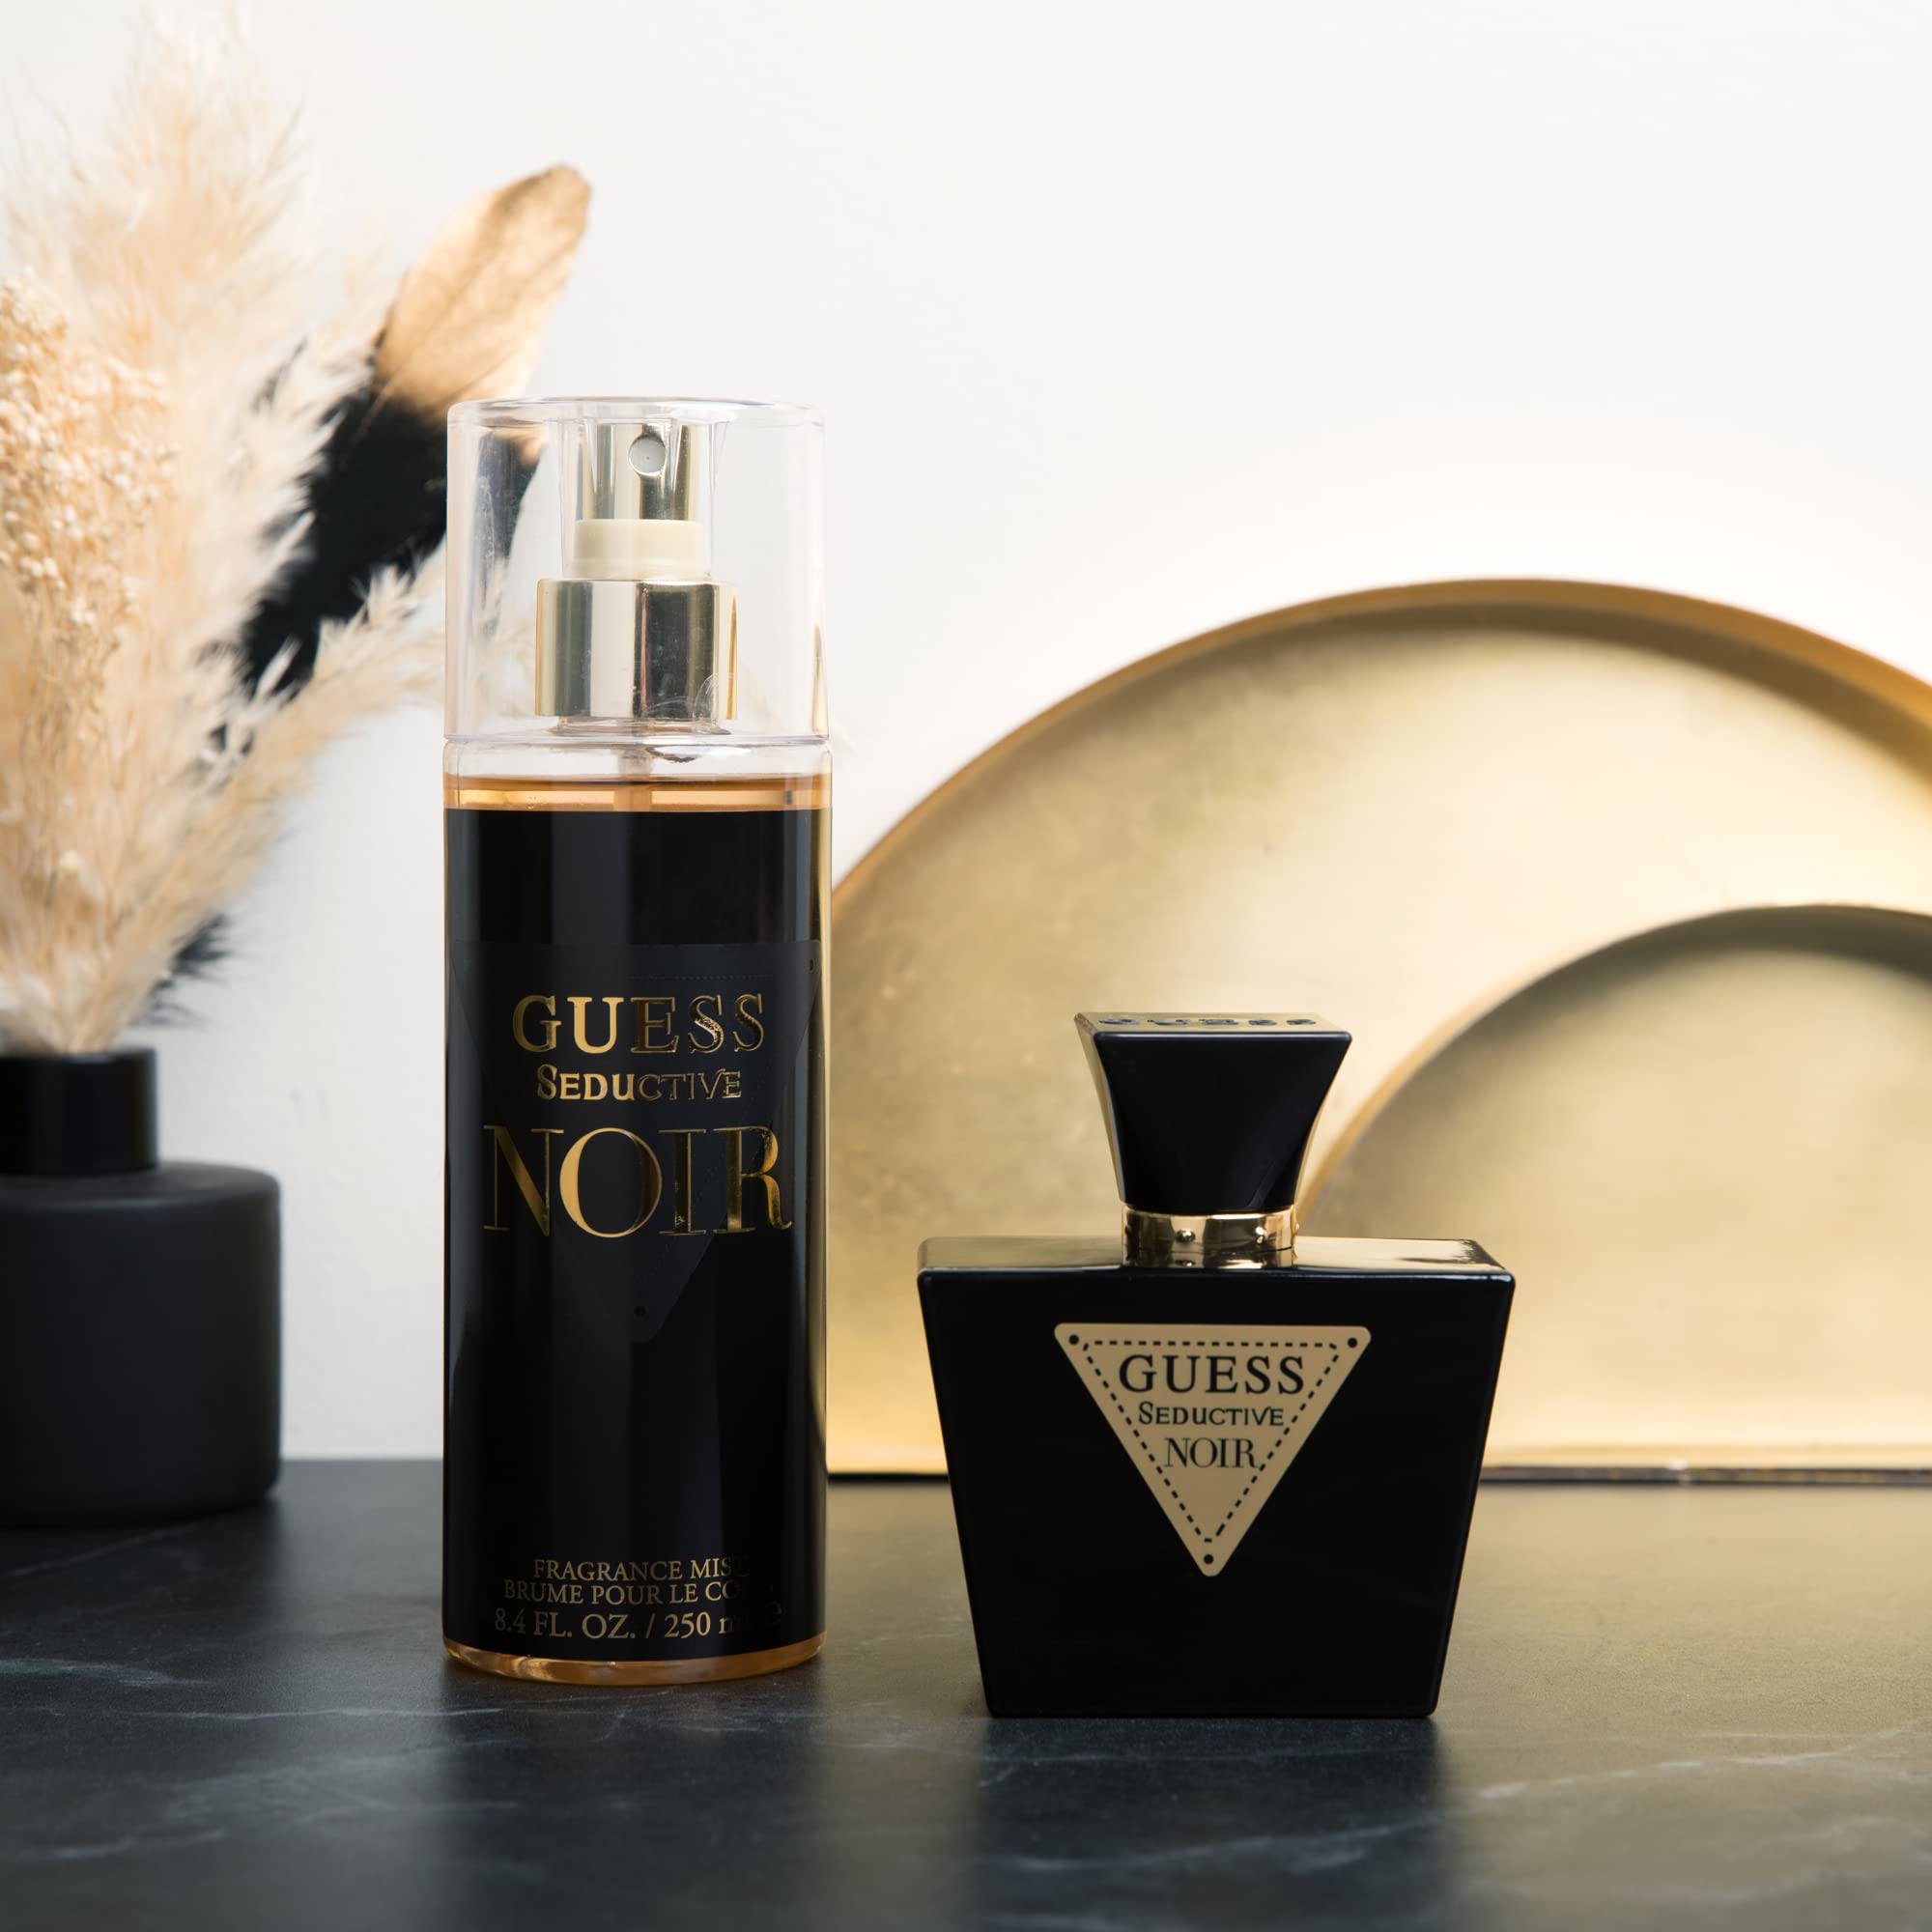 Guess Seductive Noir Body Mist | My Perfume Shop Australia